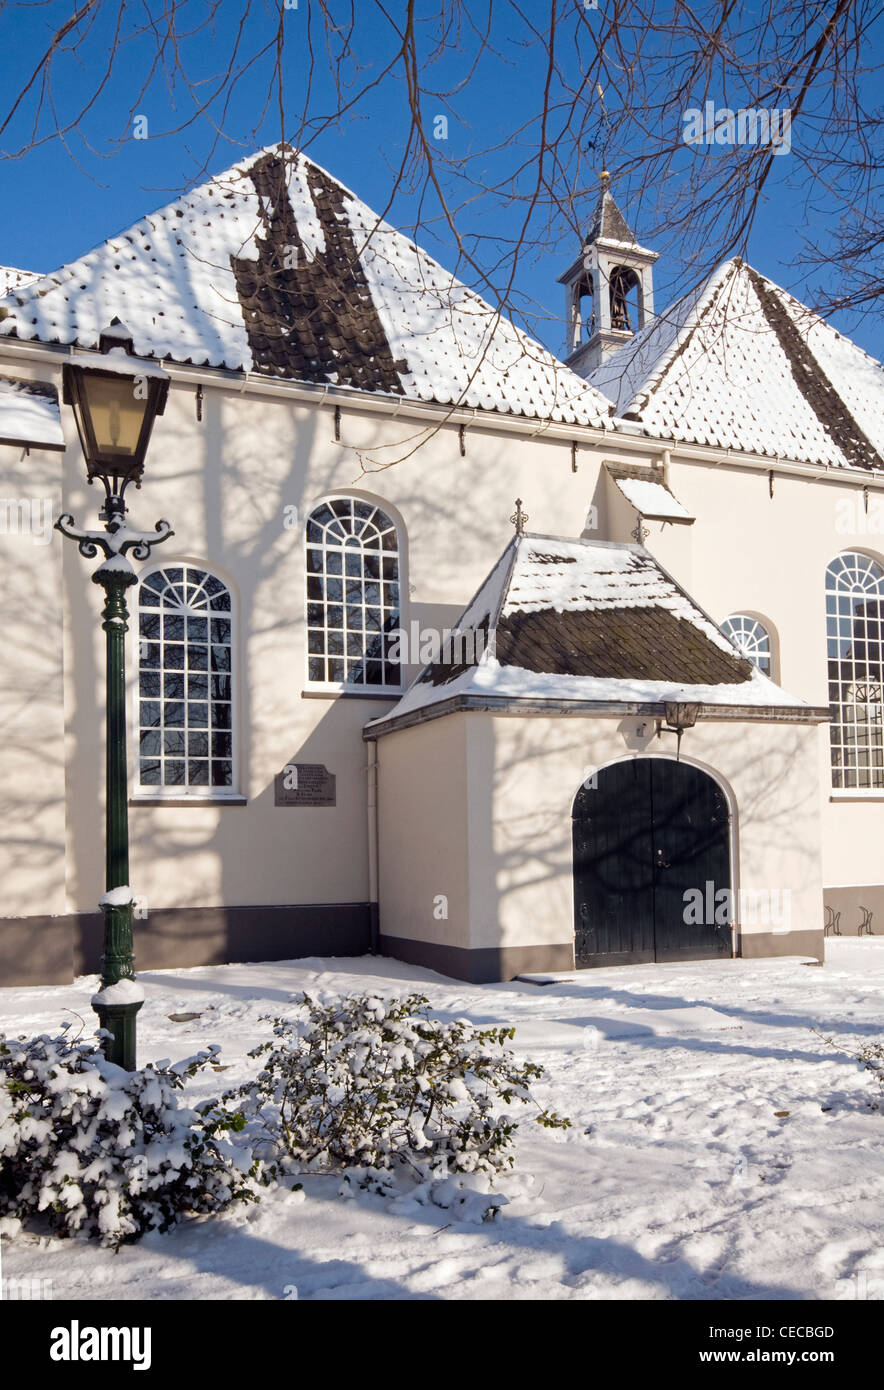 Scena invernale di una chiesa nella neve Foto Stock